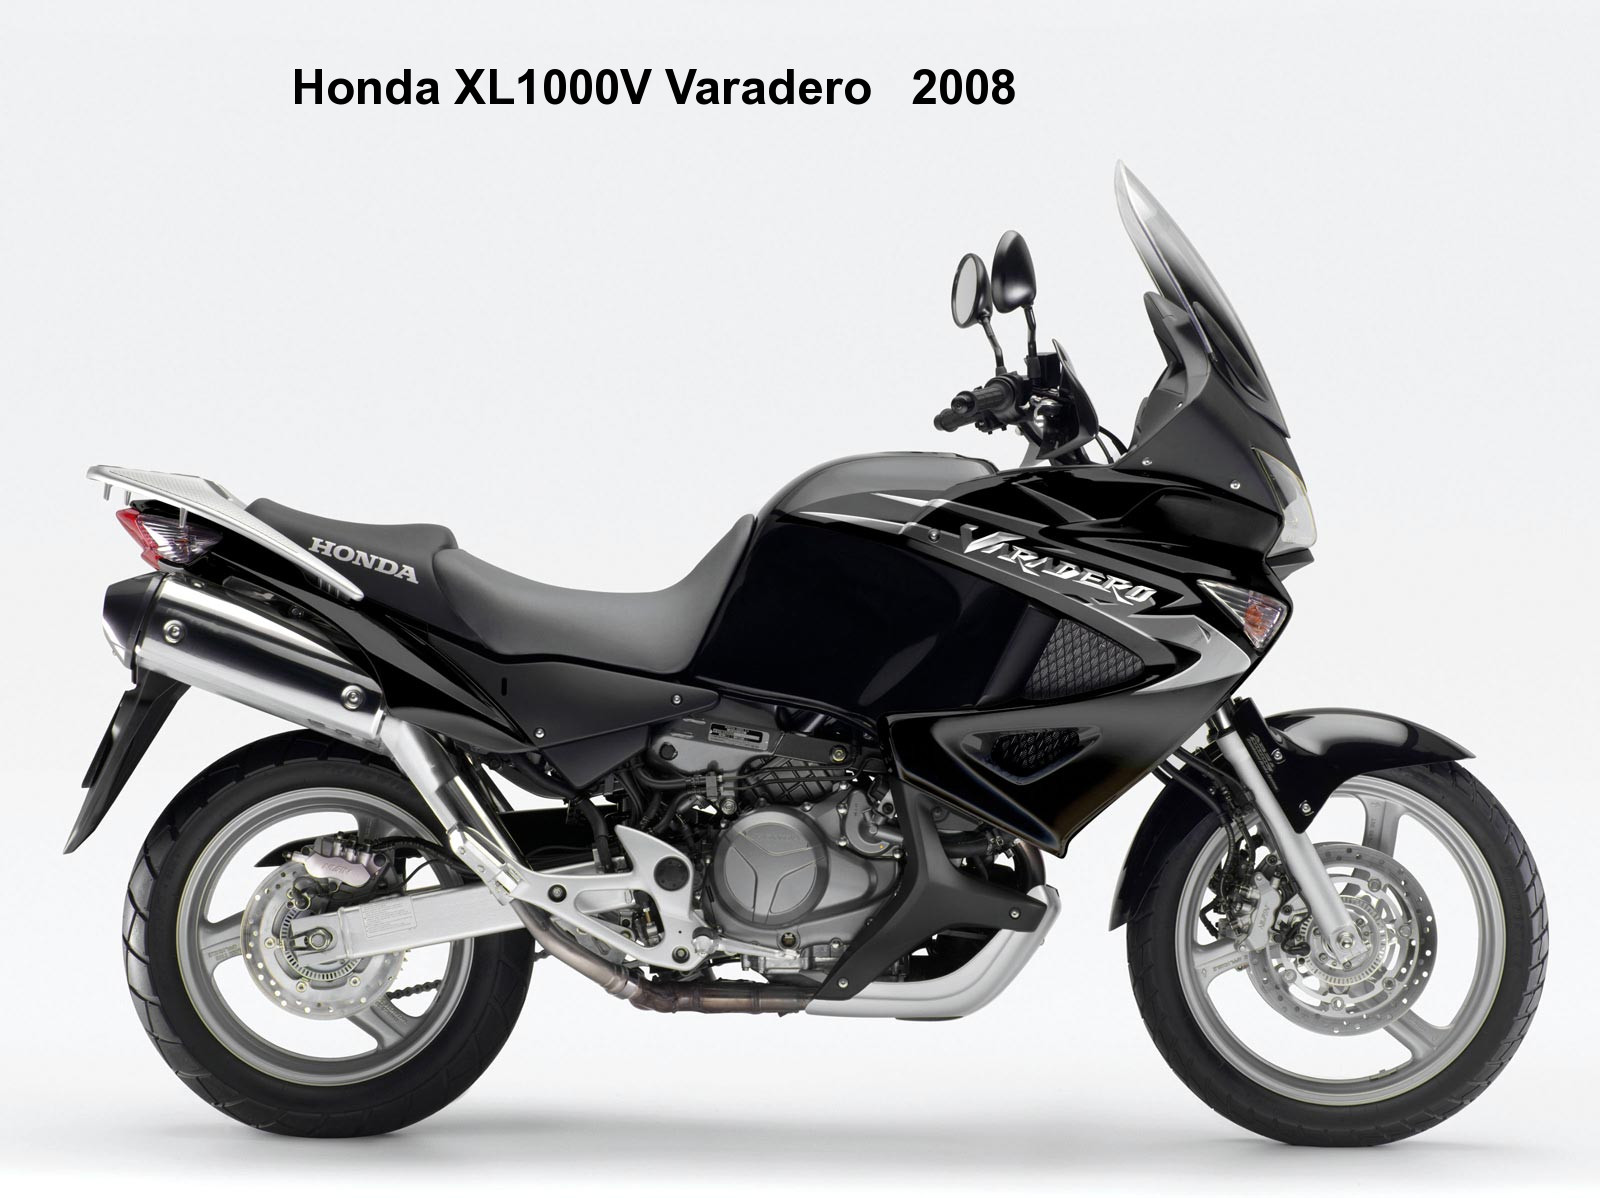 Honda Varadero 2008